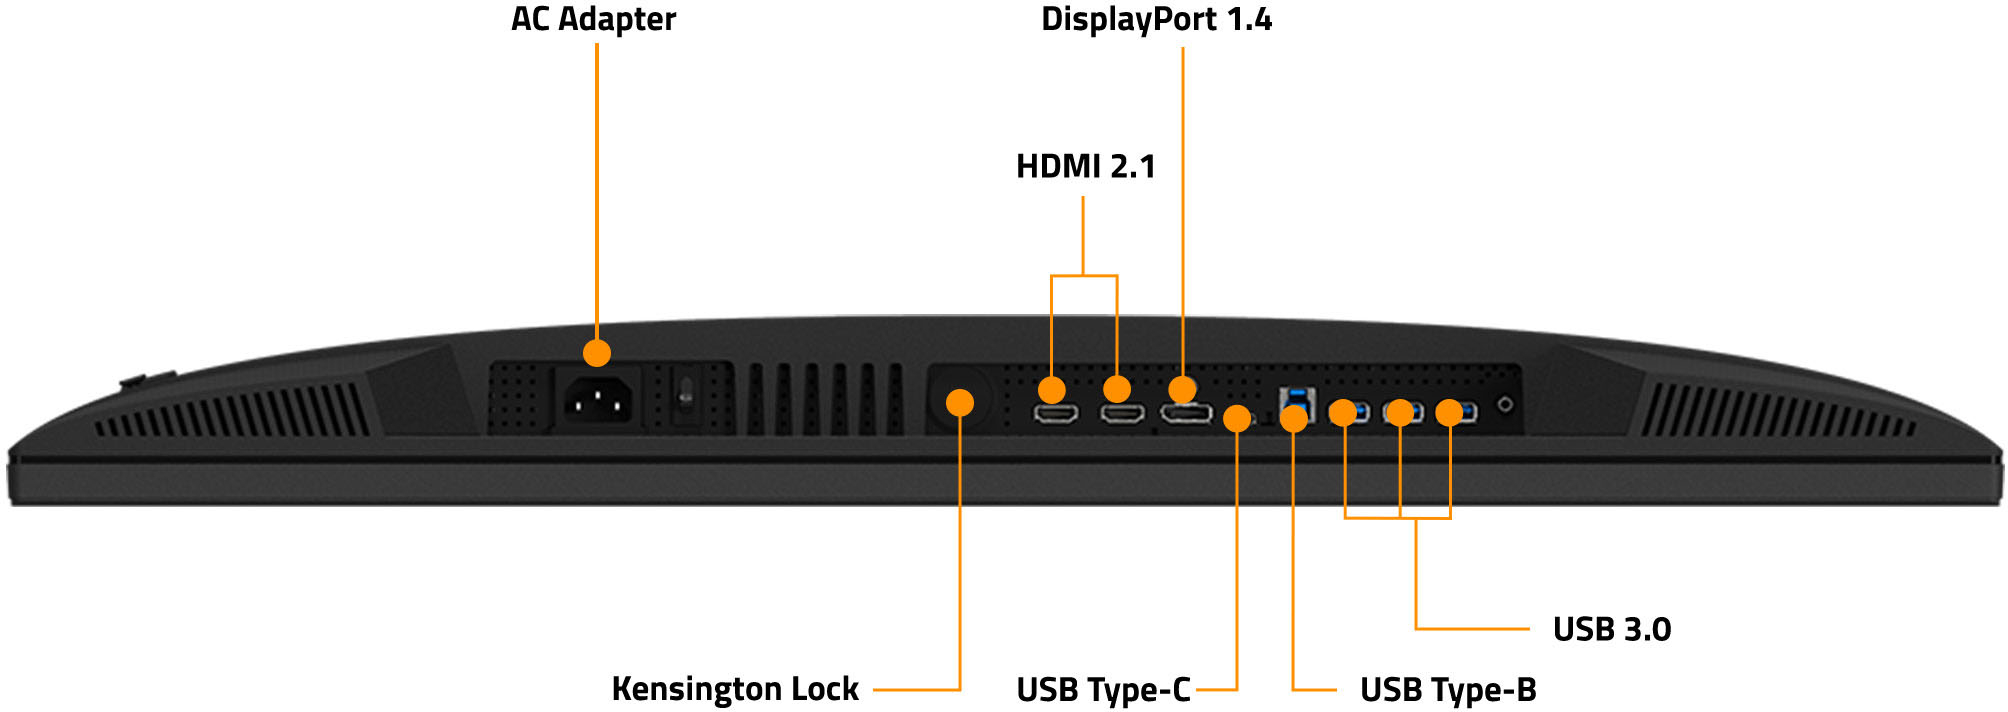 Gigabyte M32U Gaming Monitor LCD 31.5 4K UHD IPS 144Hz 1ms HDMI  DisplayPort USB